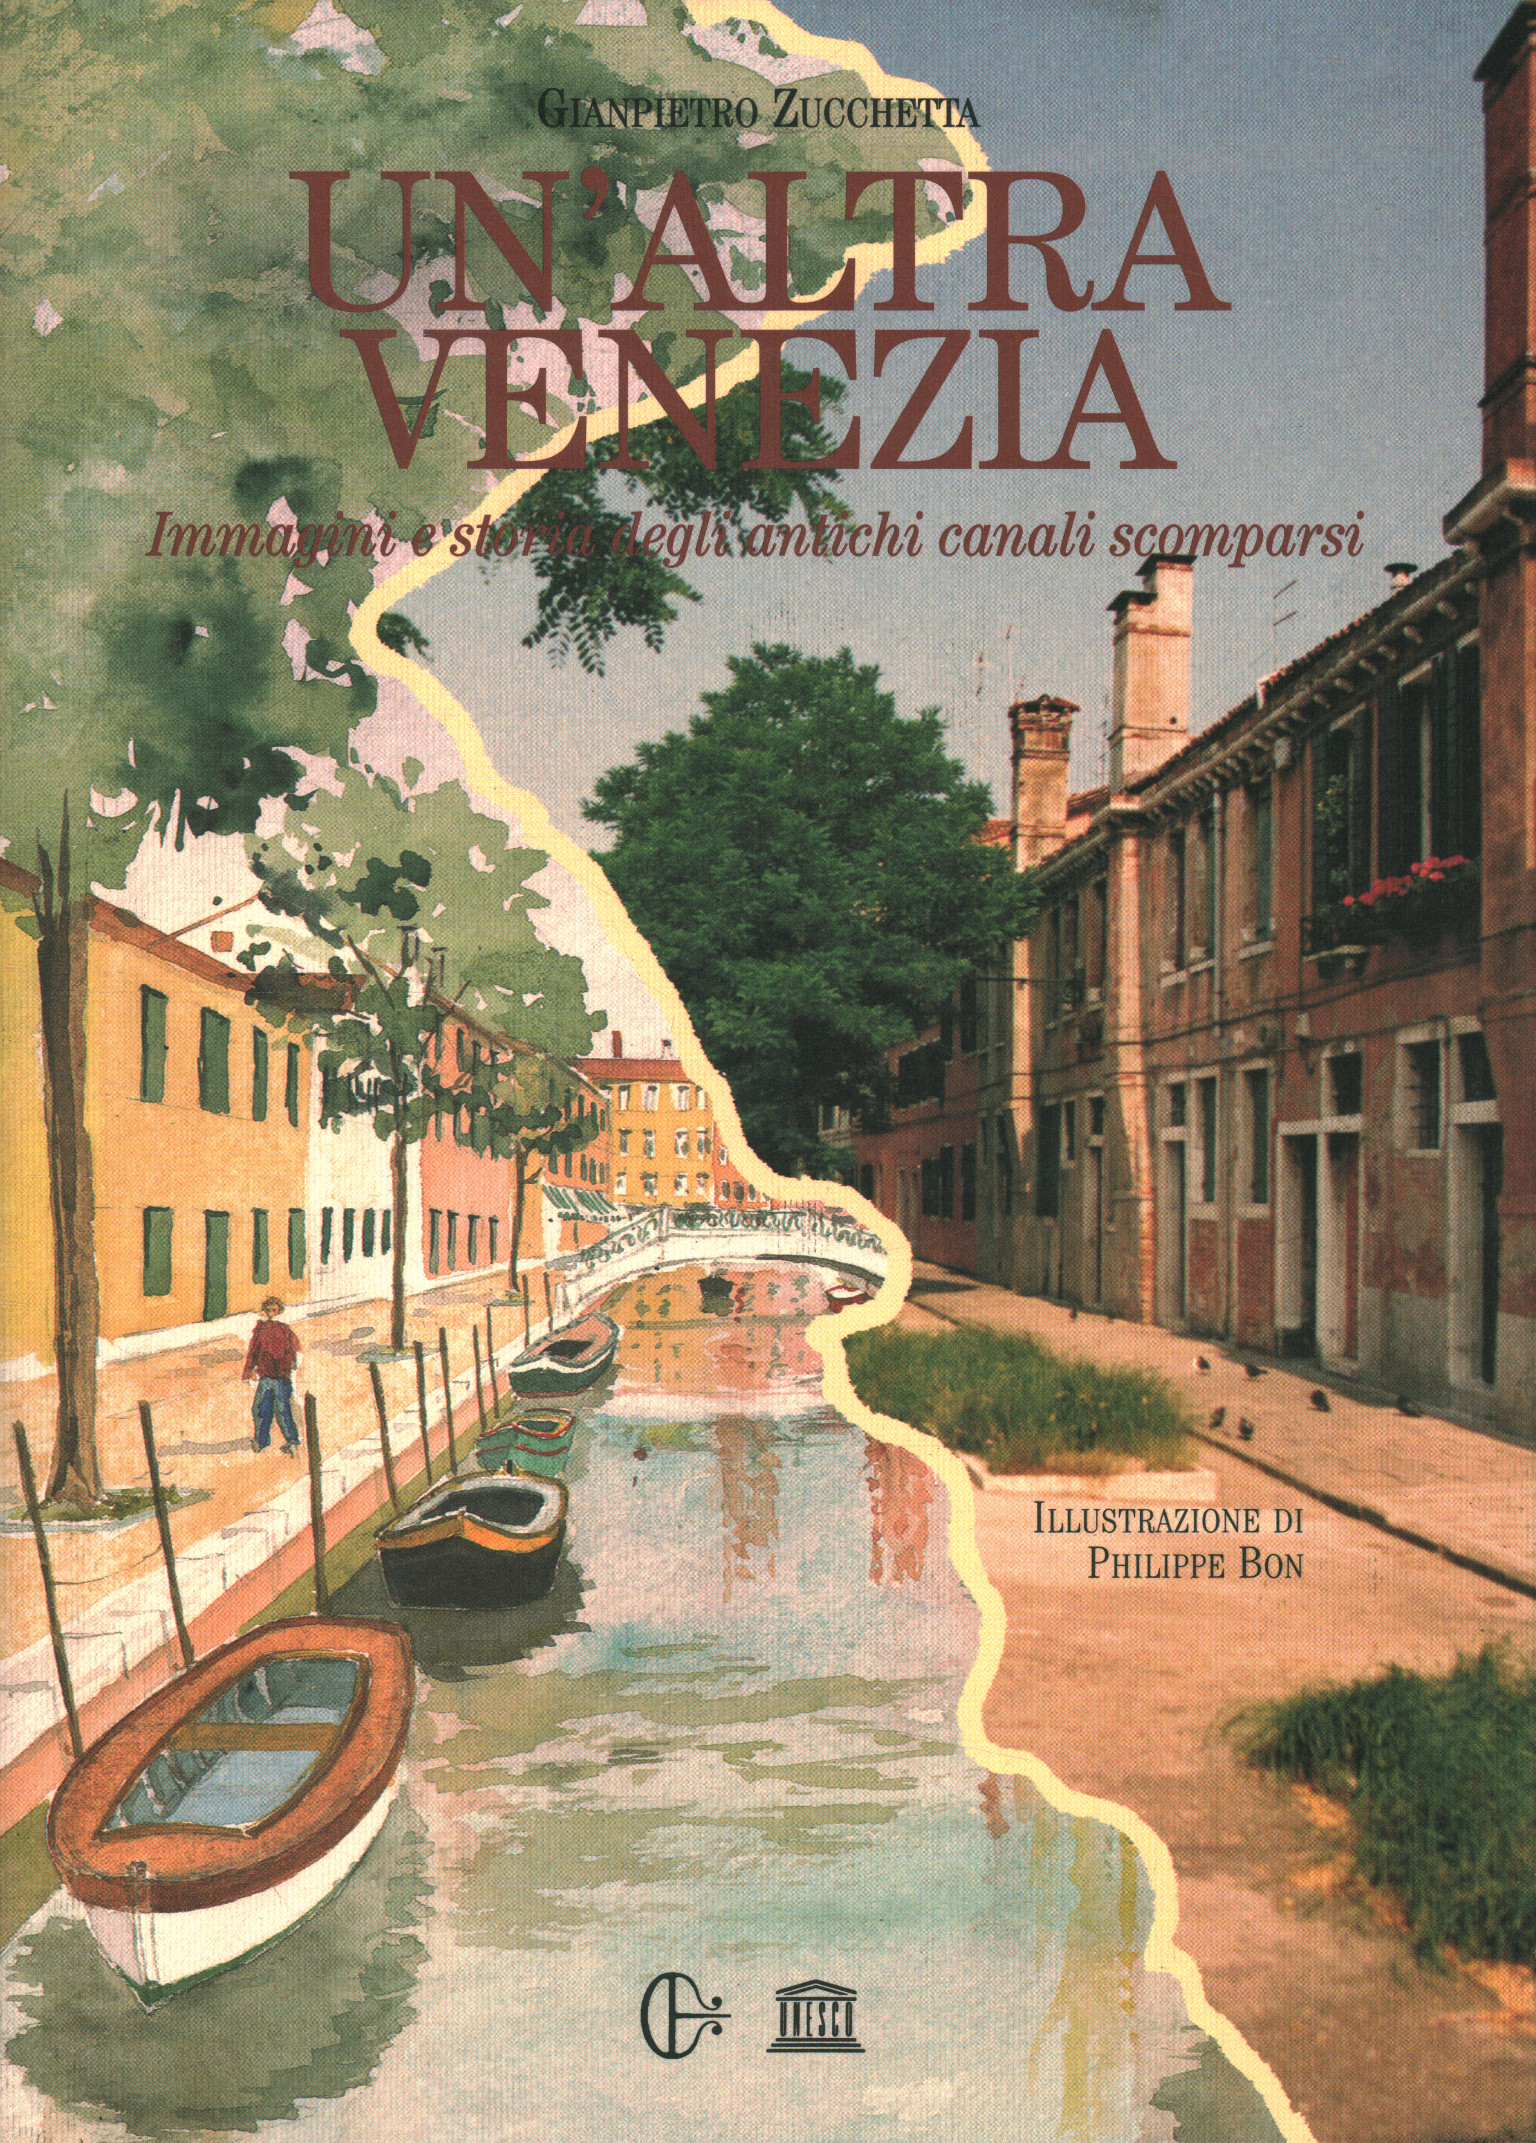 Un'altra Venezia / Another Veni